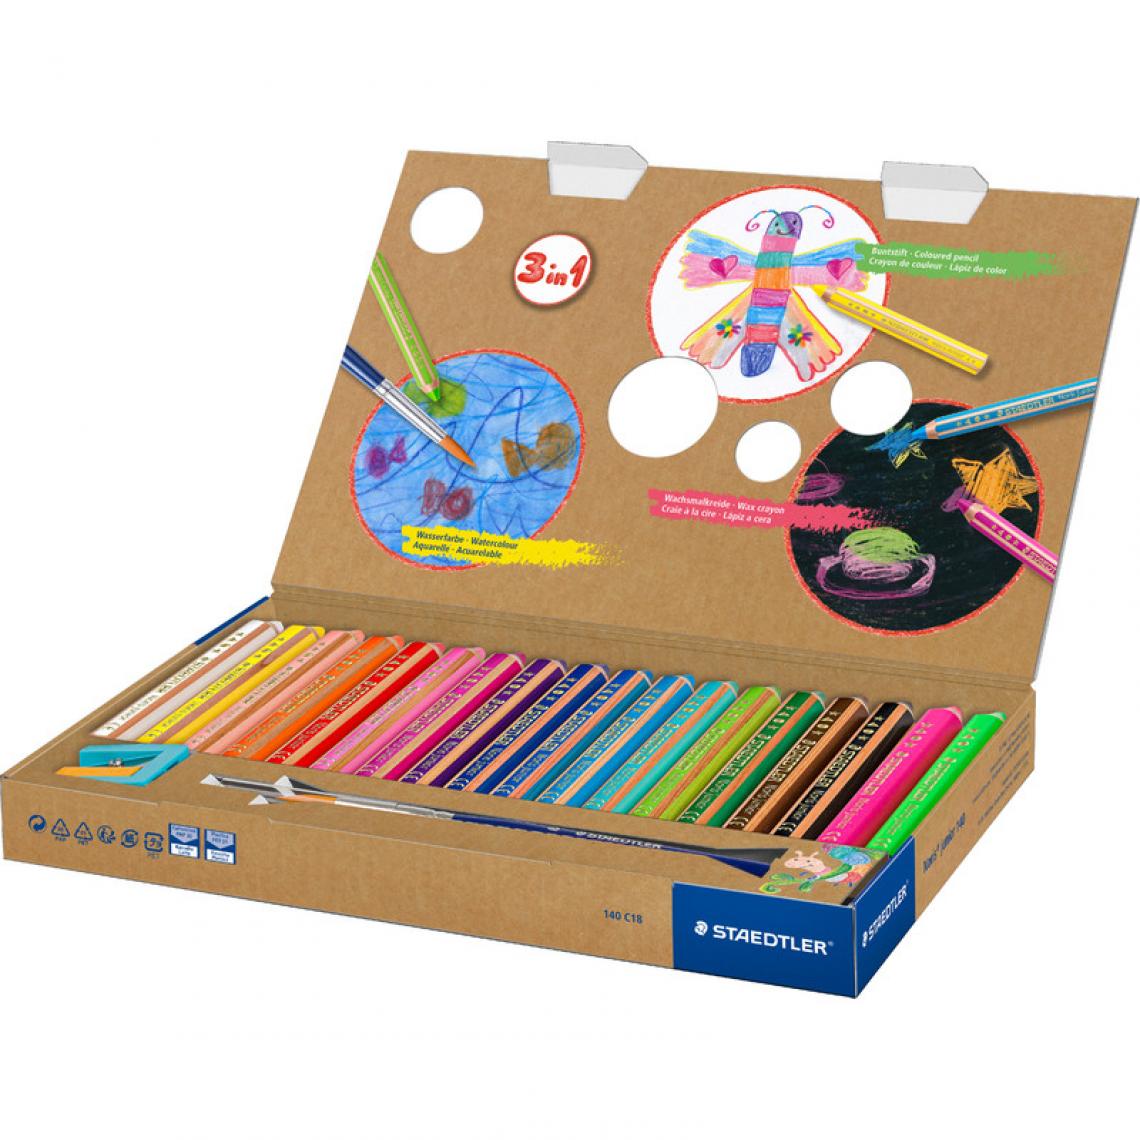 Staedtler - STAEDTLER Crayon de couleur hexagonal buddy, étui carton 18 () - Outils et accessoires du peintre